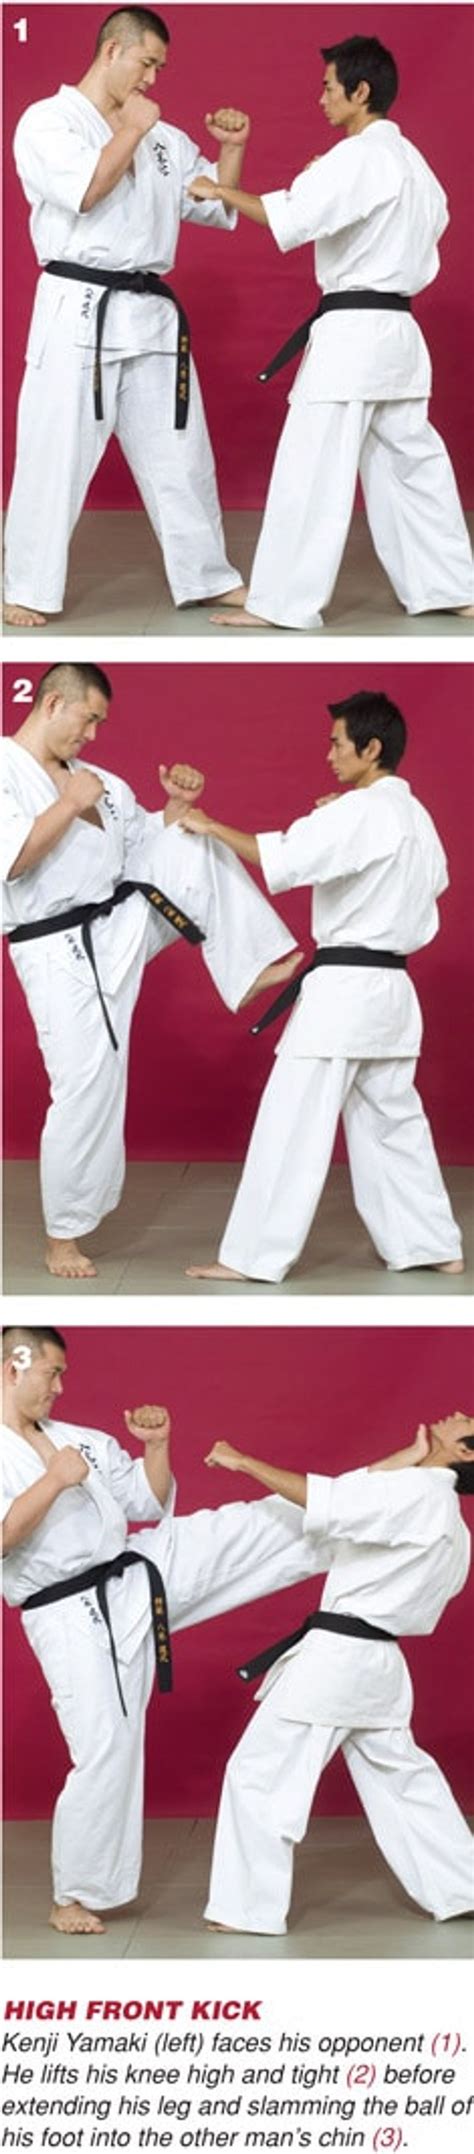 Learn 3 Kyokushin Karate Kicks From Kenji Yamaki Karate Moves Karate